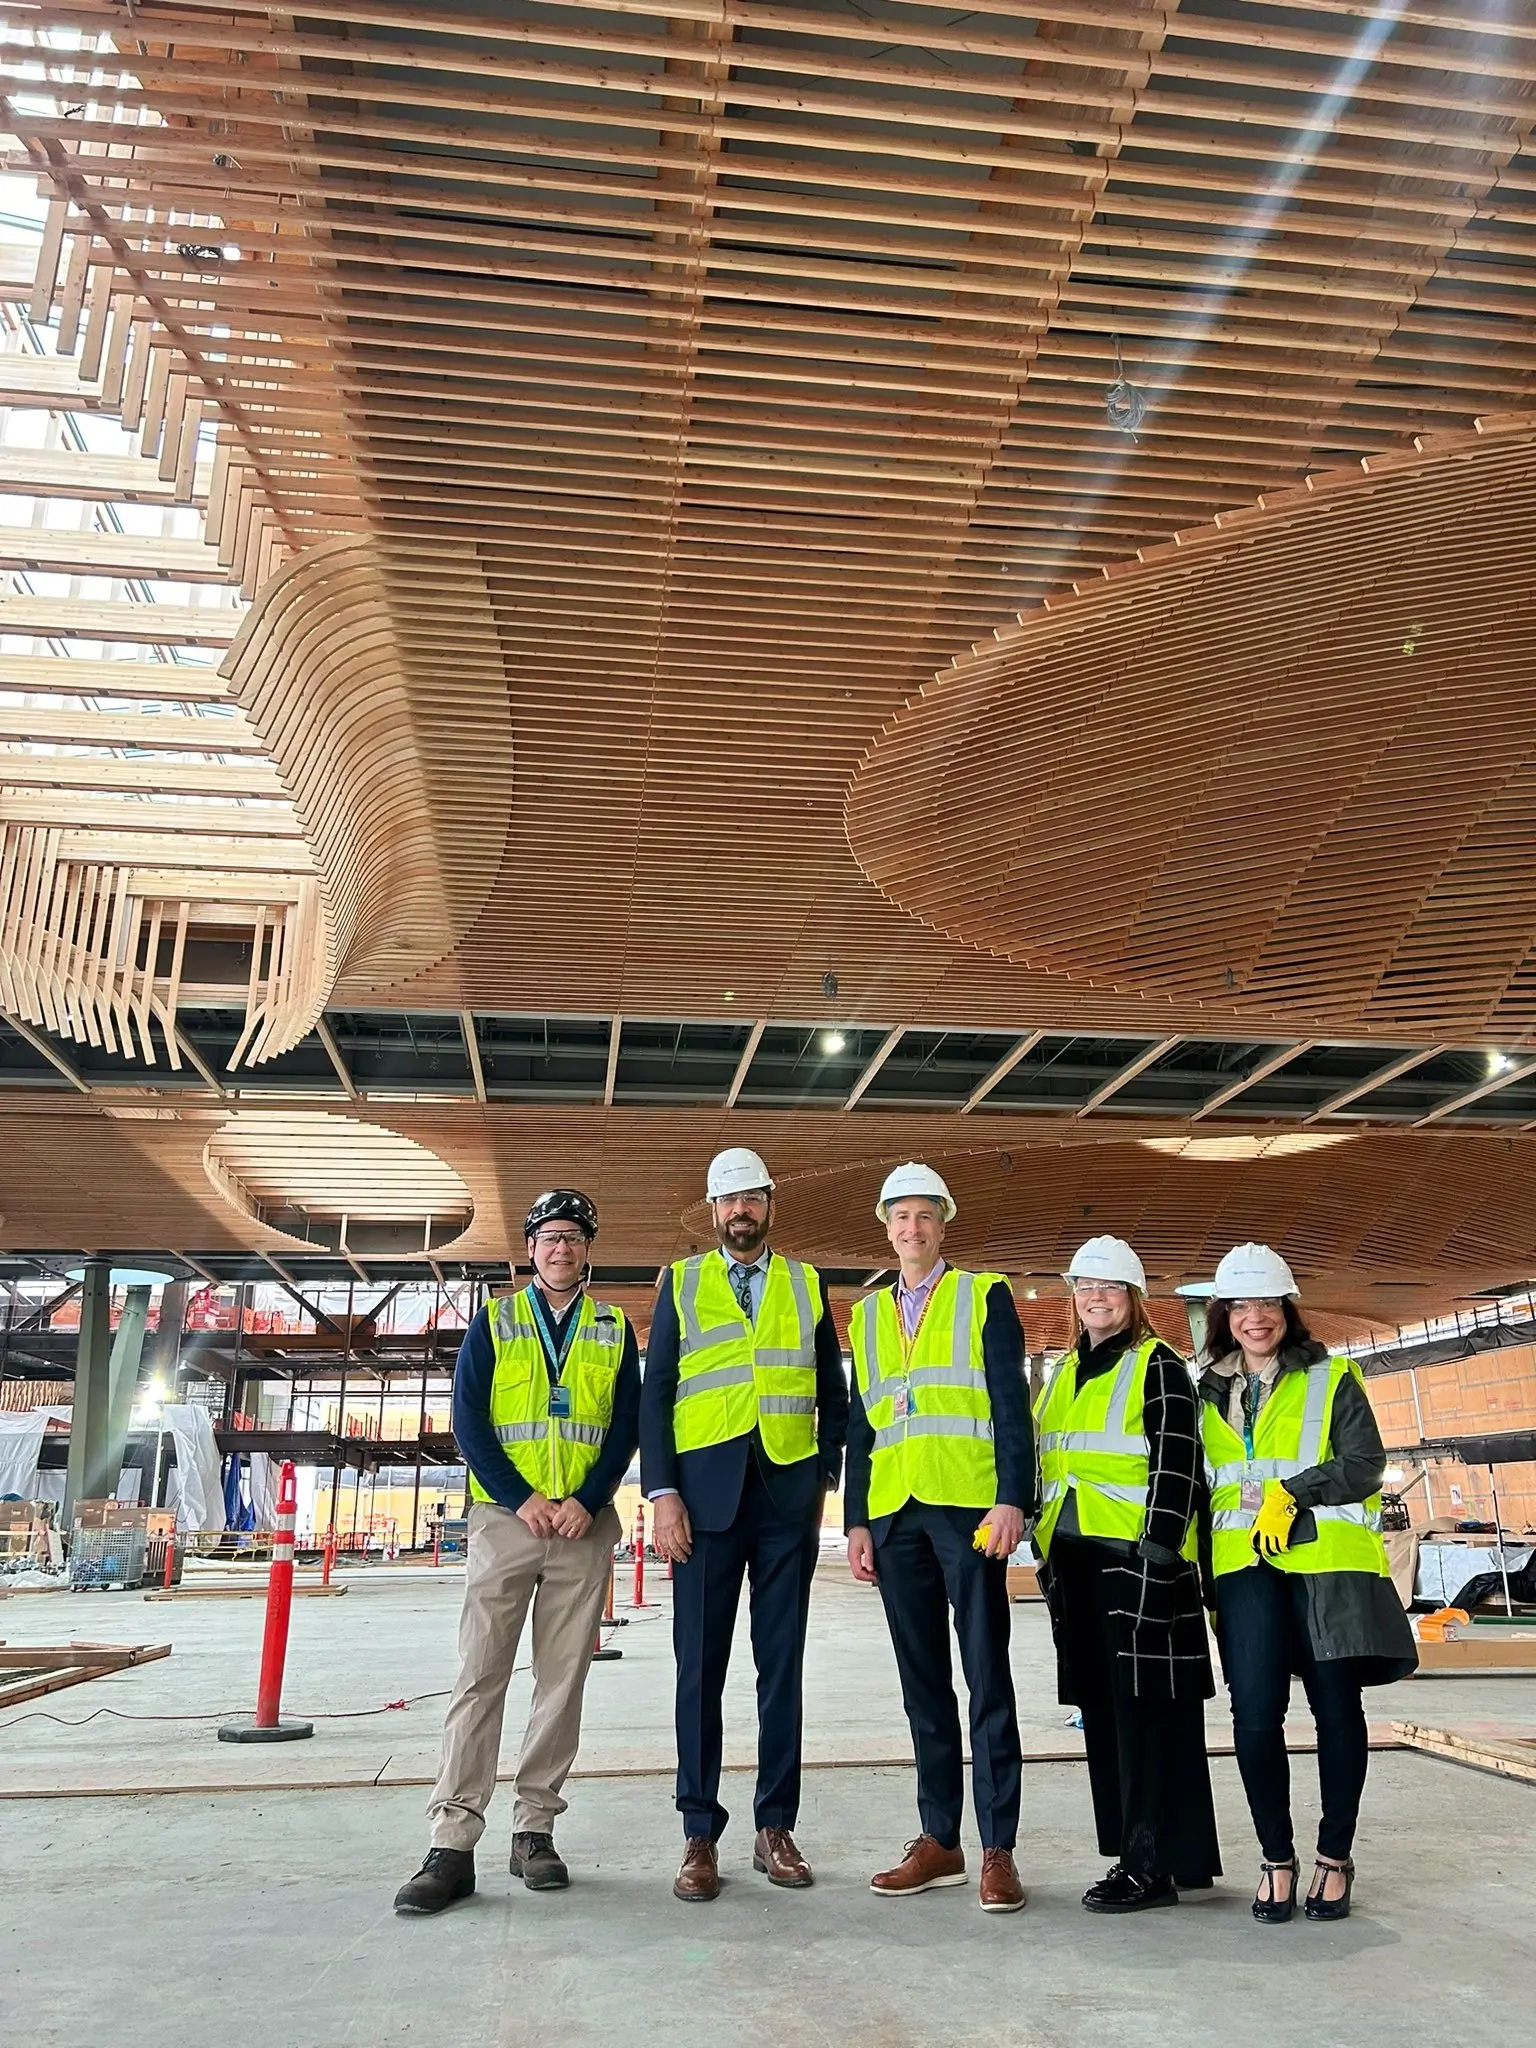 El ministro Jagrup Brar es fotografiado con varios colegas en una nueva sección del aeropuerto de Portland, Oregón, que cuenta con construcción masiva de madera.